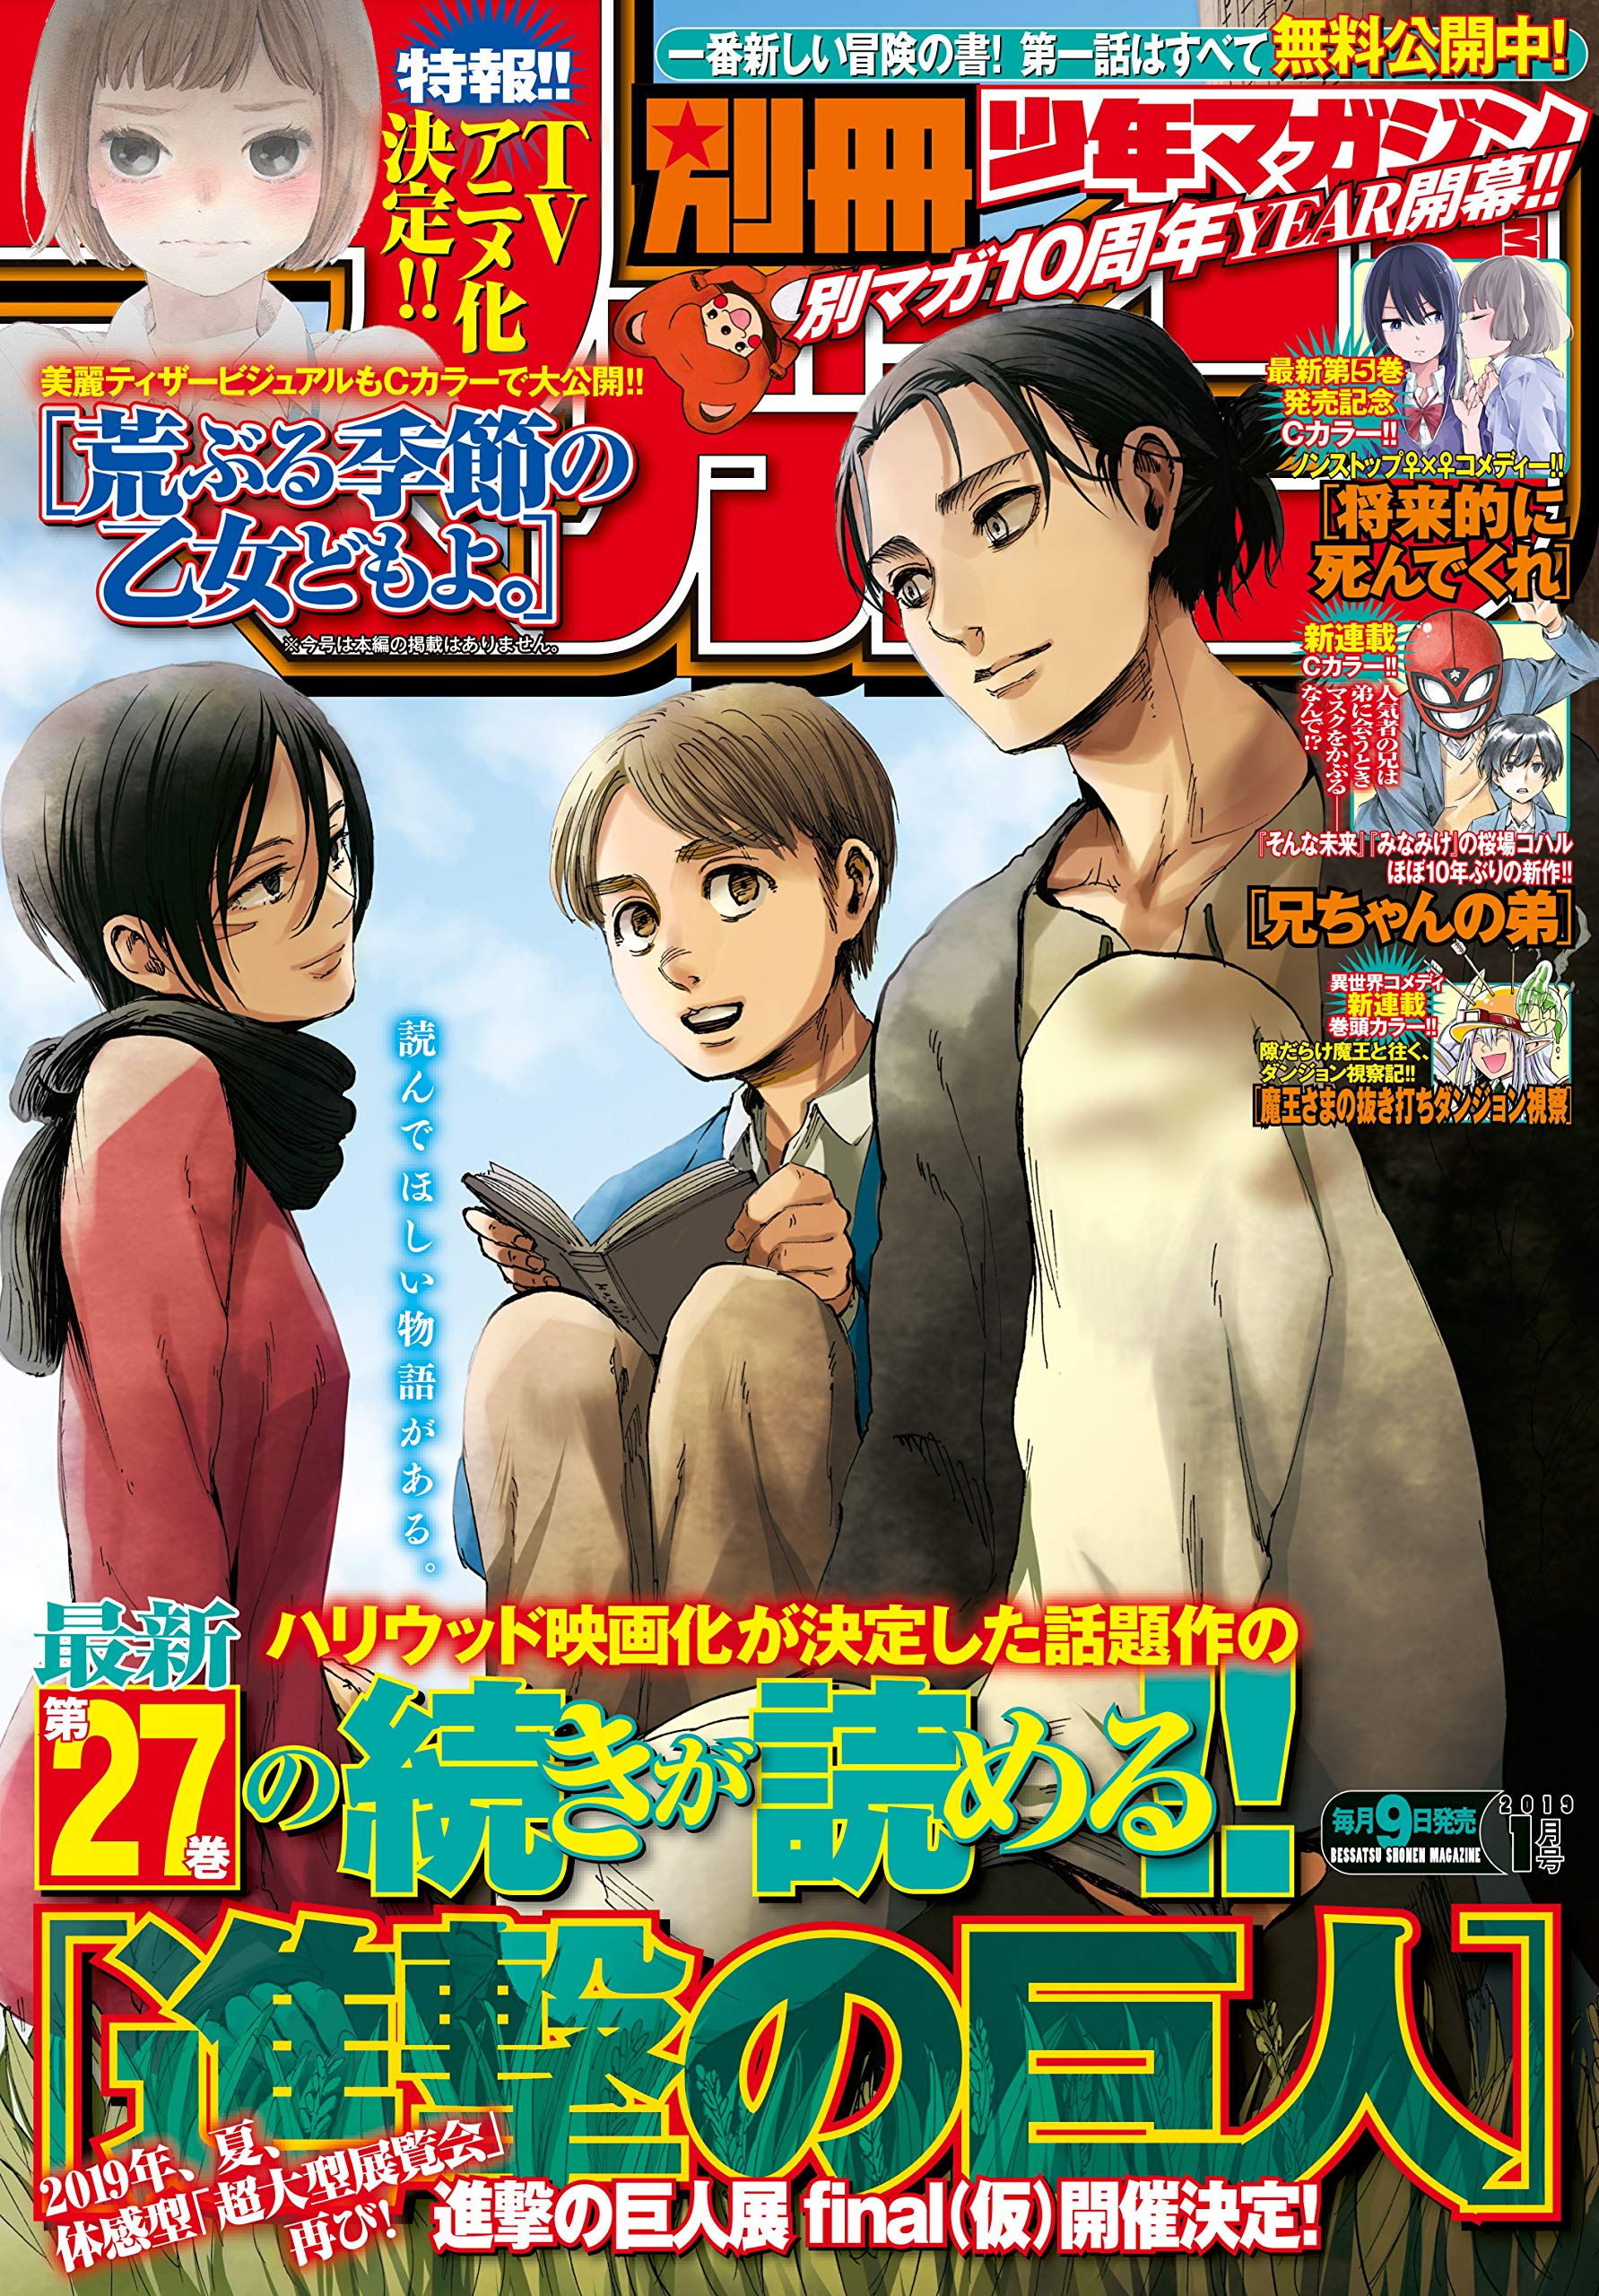 CDJapan : Bessatsu Shonen Magazine February 2014 Issue [Cover